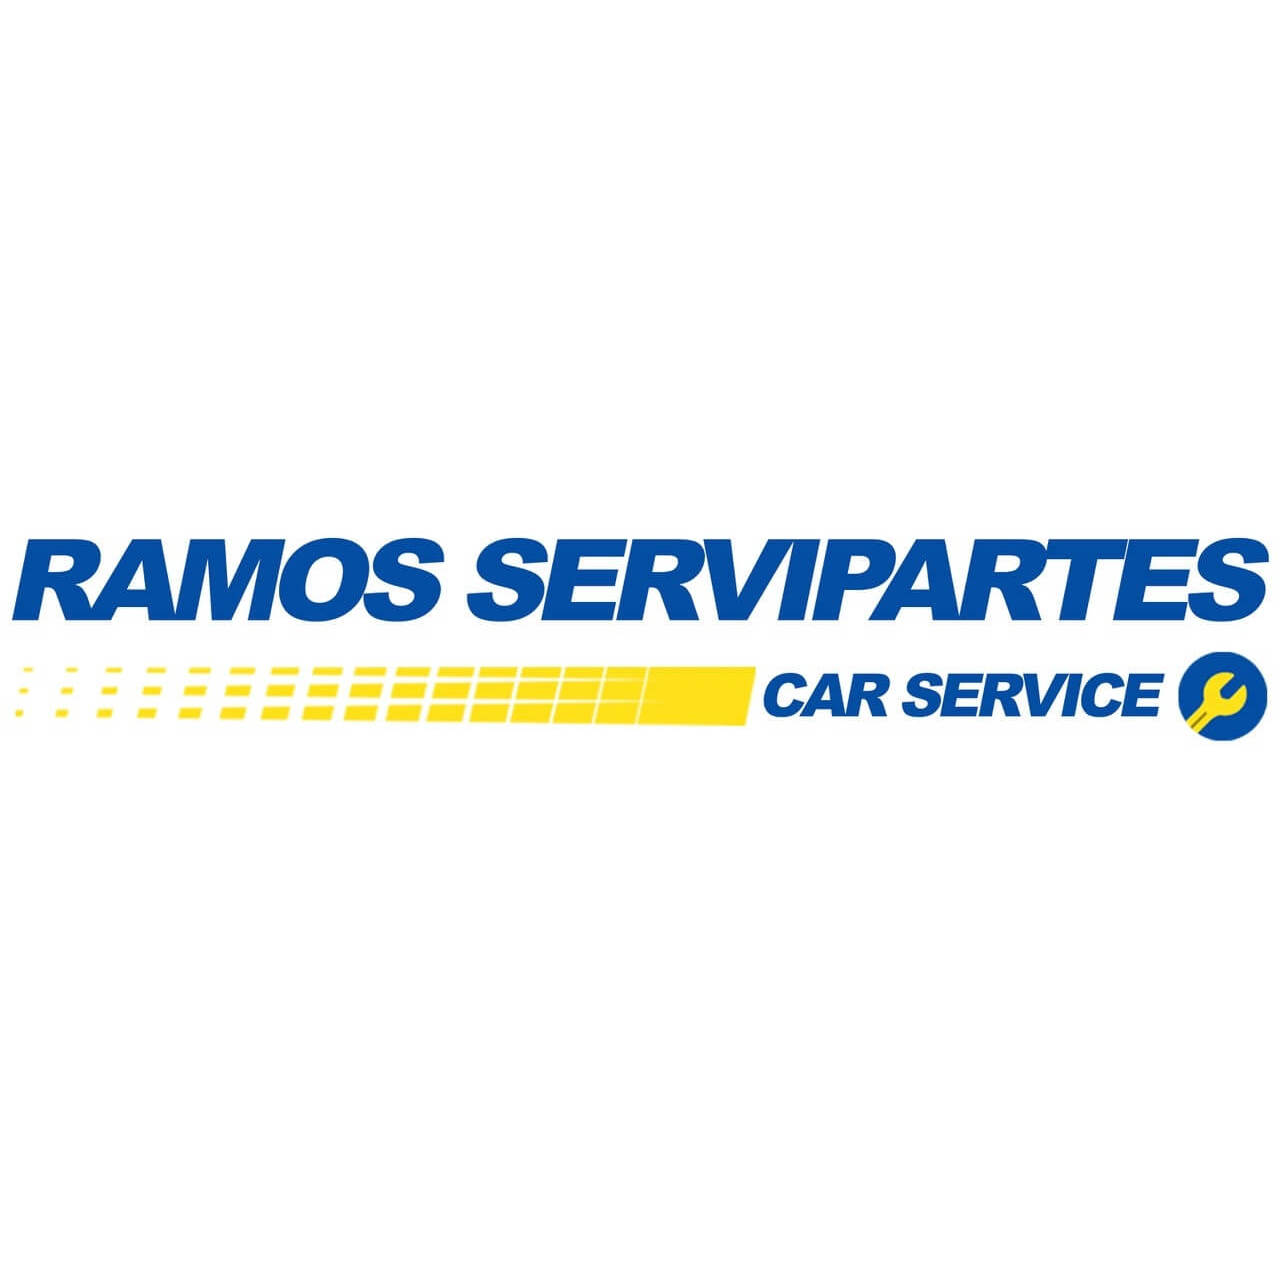 Ramos Servipartes Car Service Rioverde Centro Logo